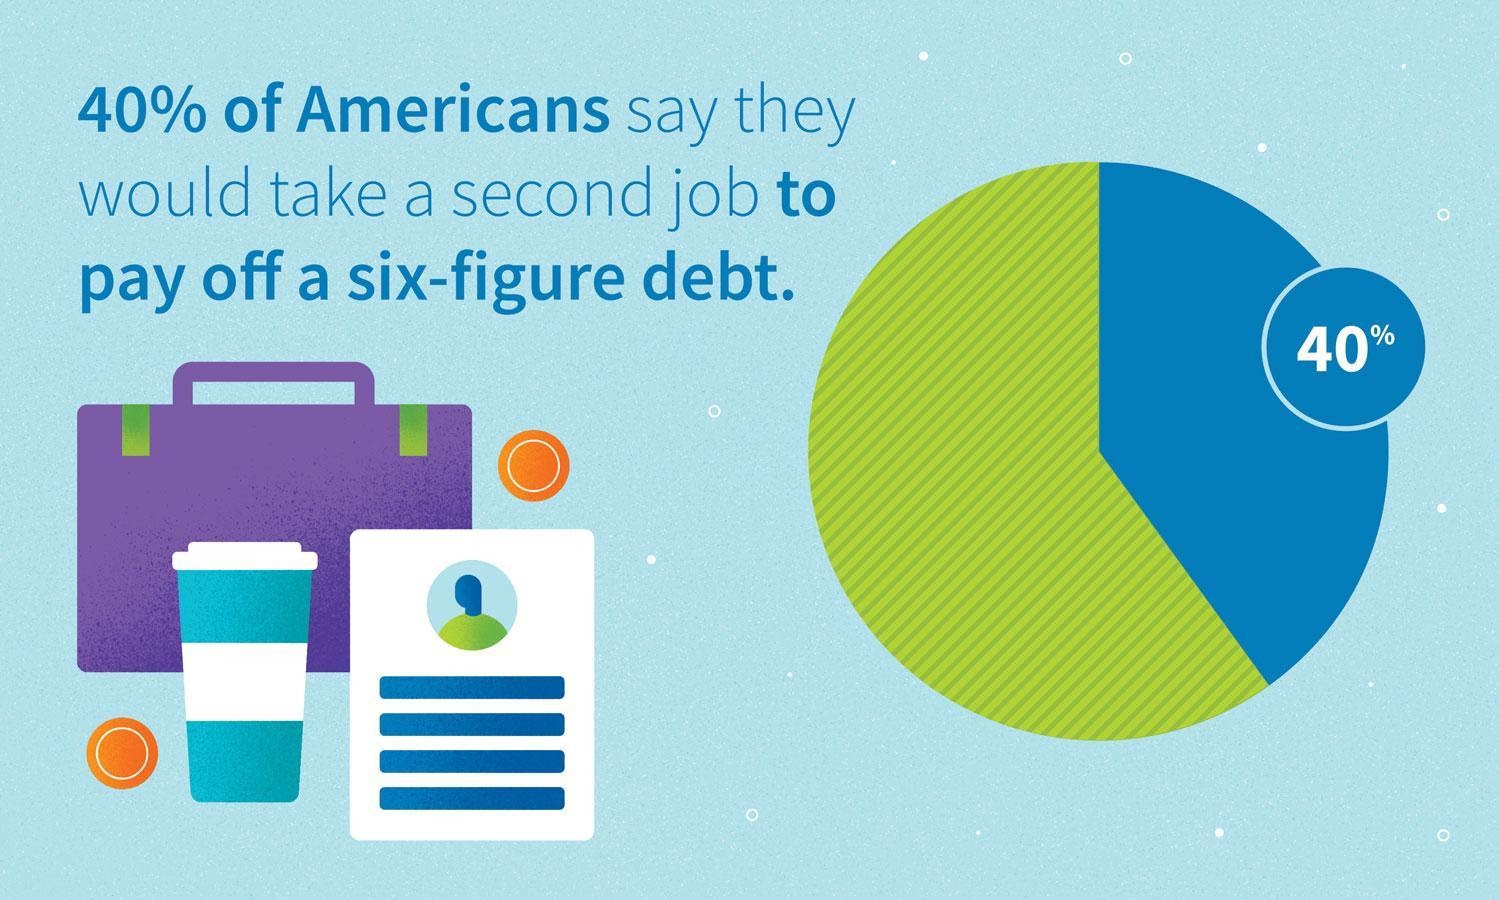 Gráfico: 40% de los estadounidenses dicen que tomarían un segundo trabajo para pagar una deuda de seis cifras.